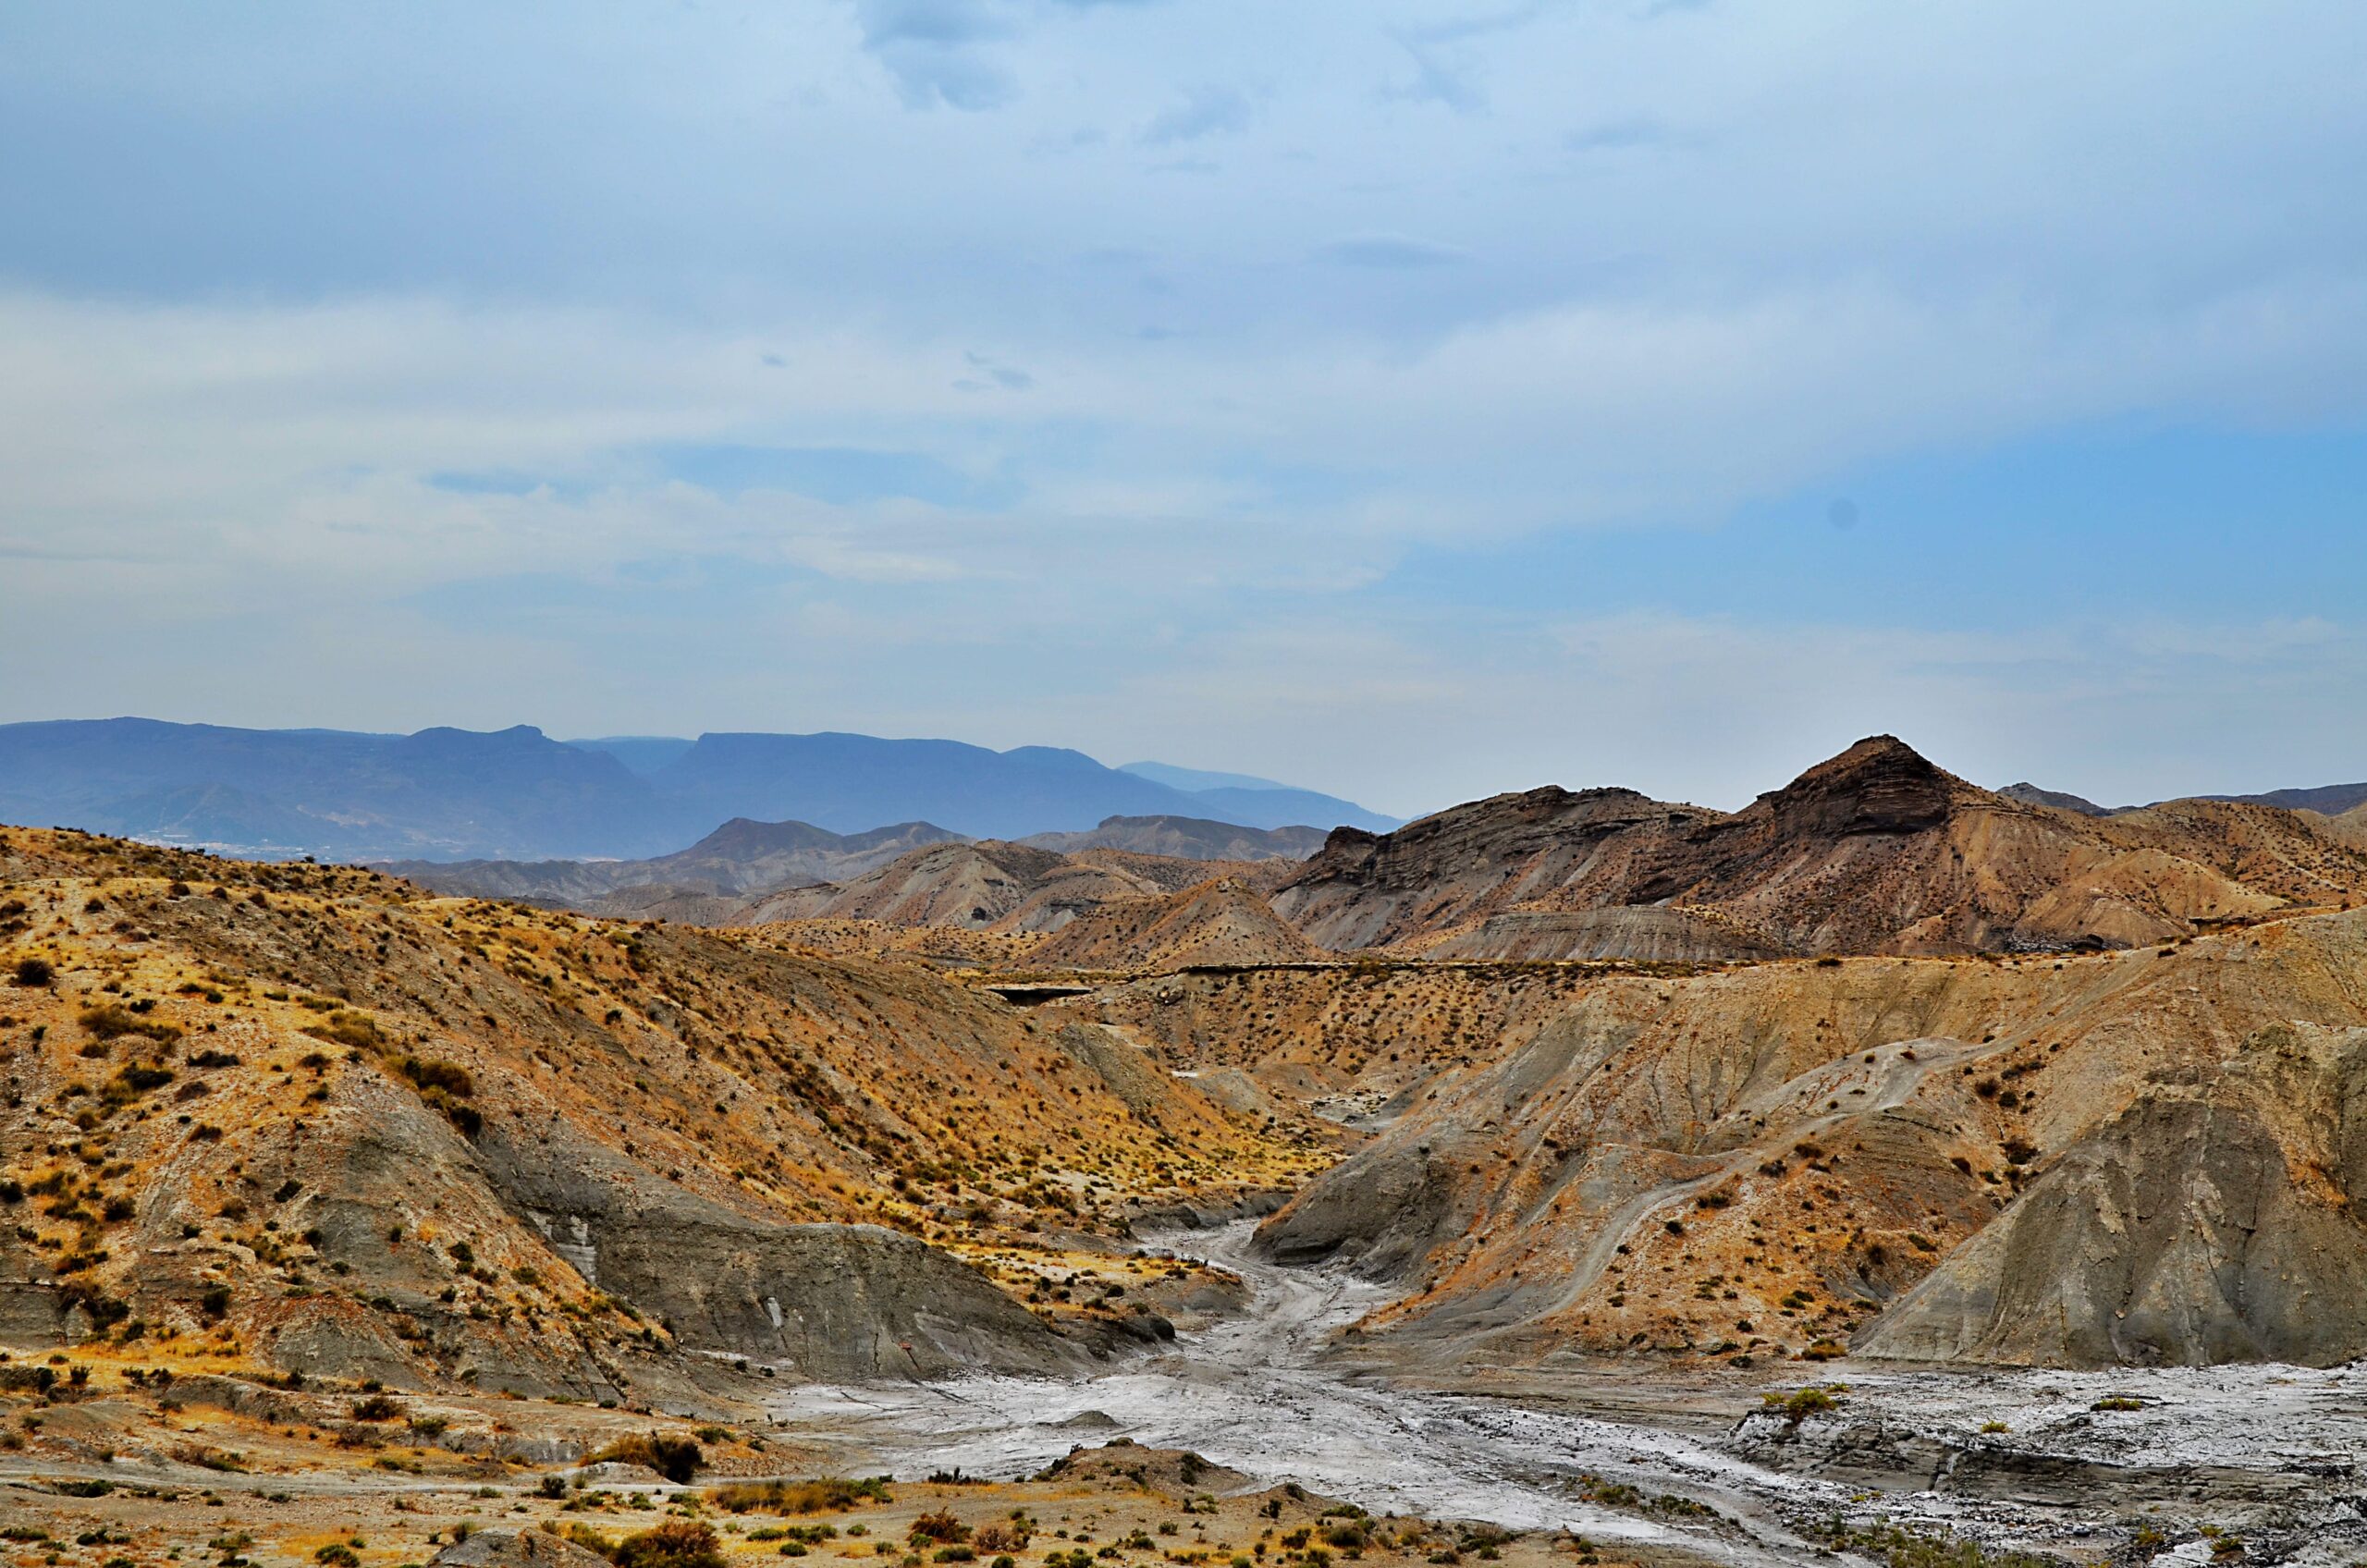 Landschap van de Tabernaswoestijn, met een weg die ideaal is voor fietsroutes door de woestijn.